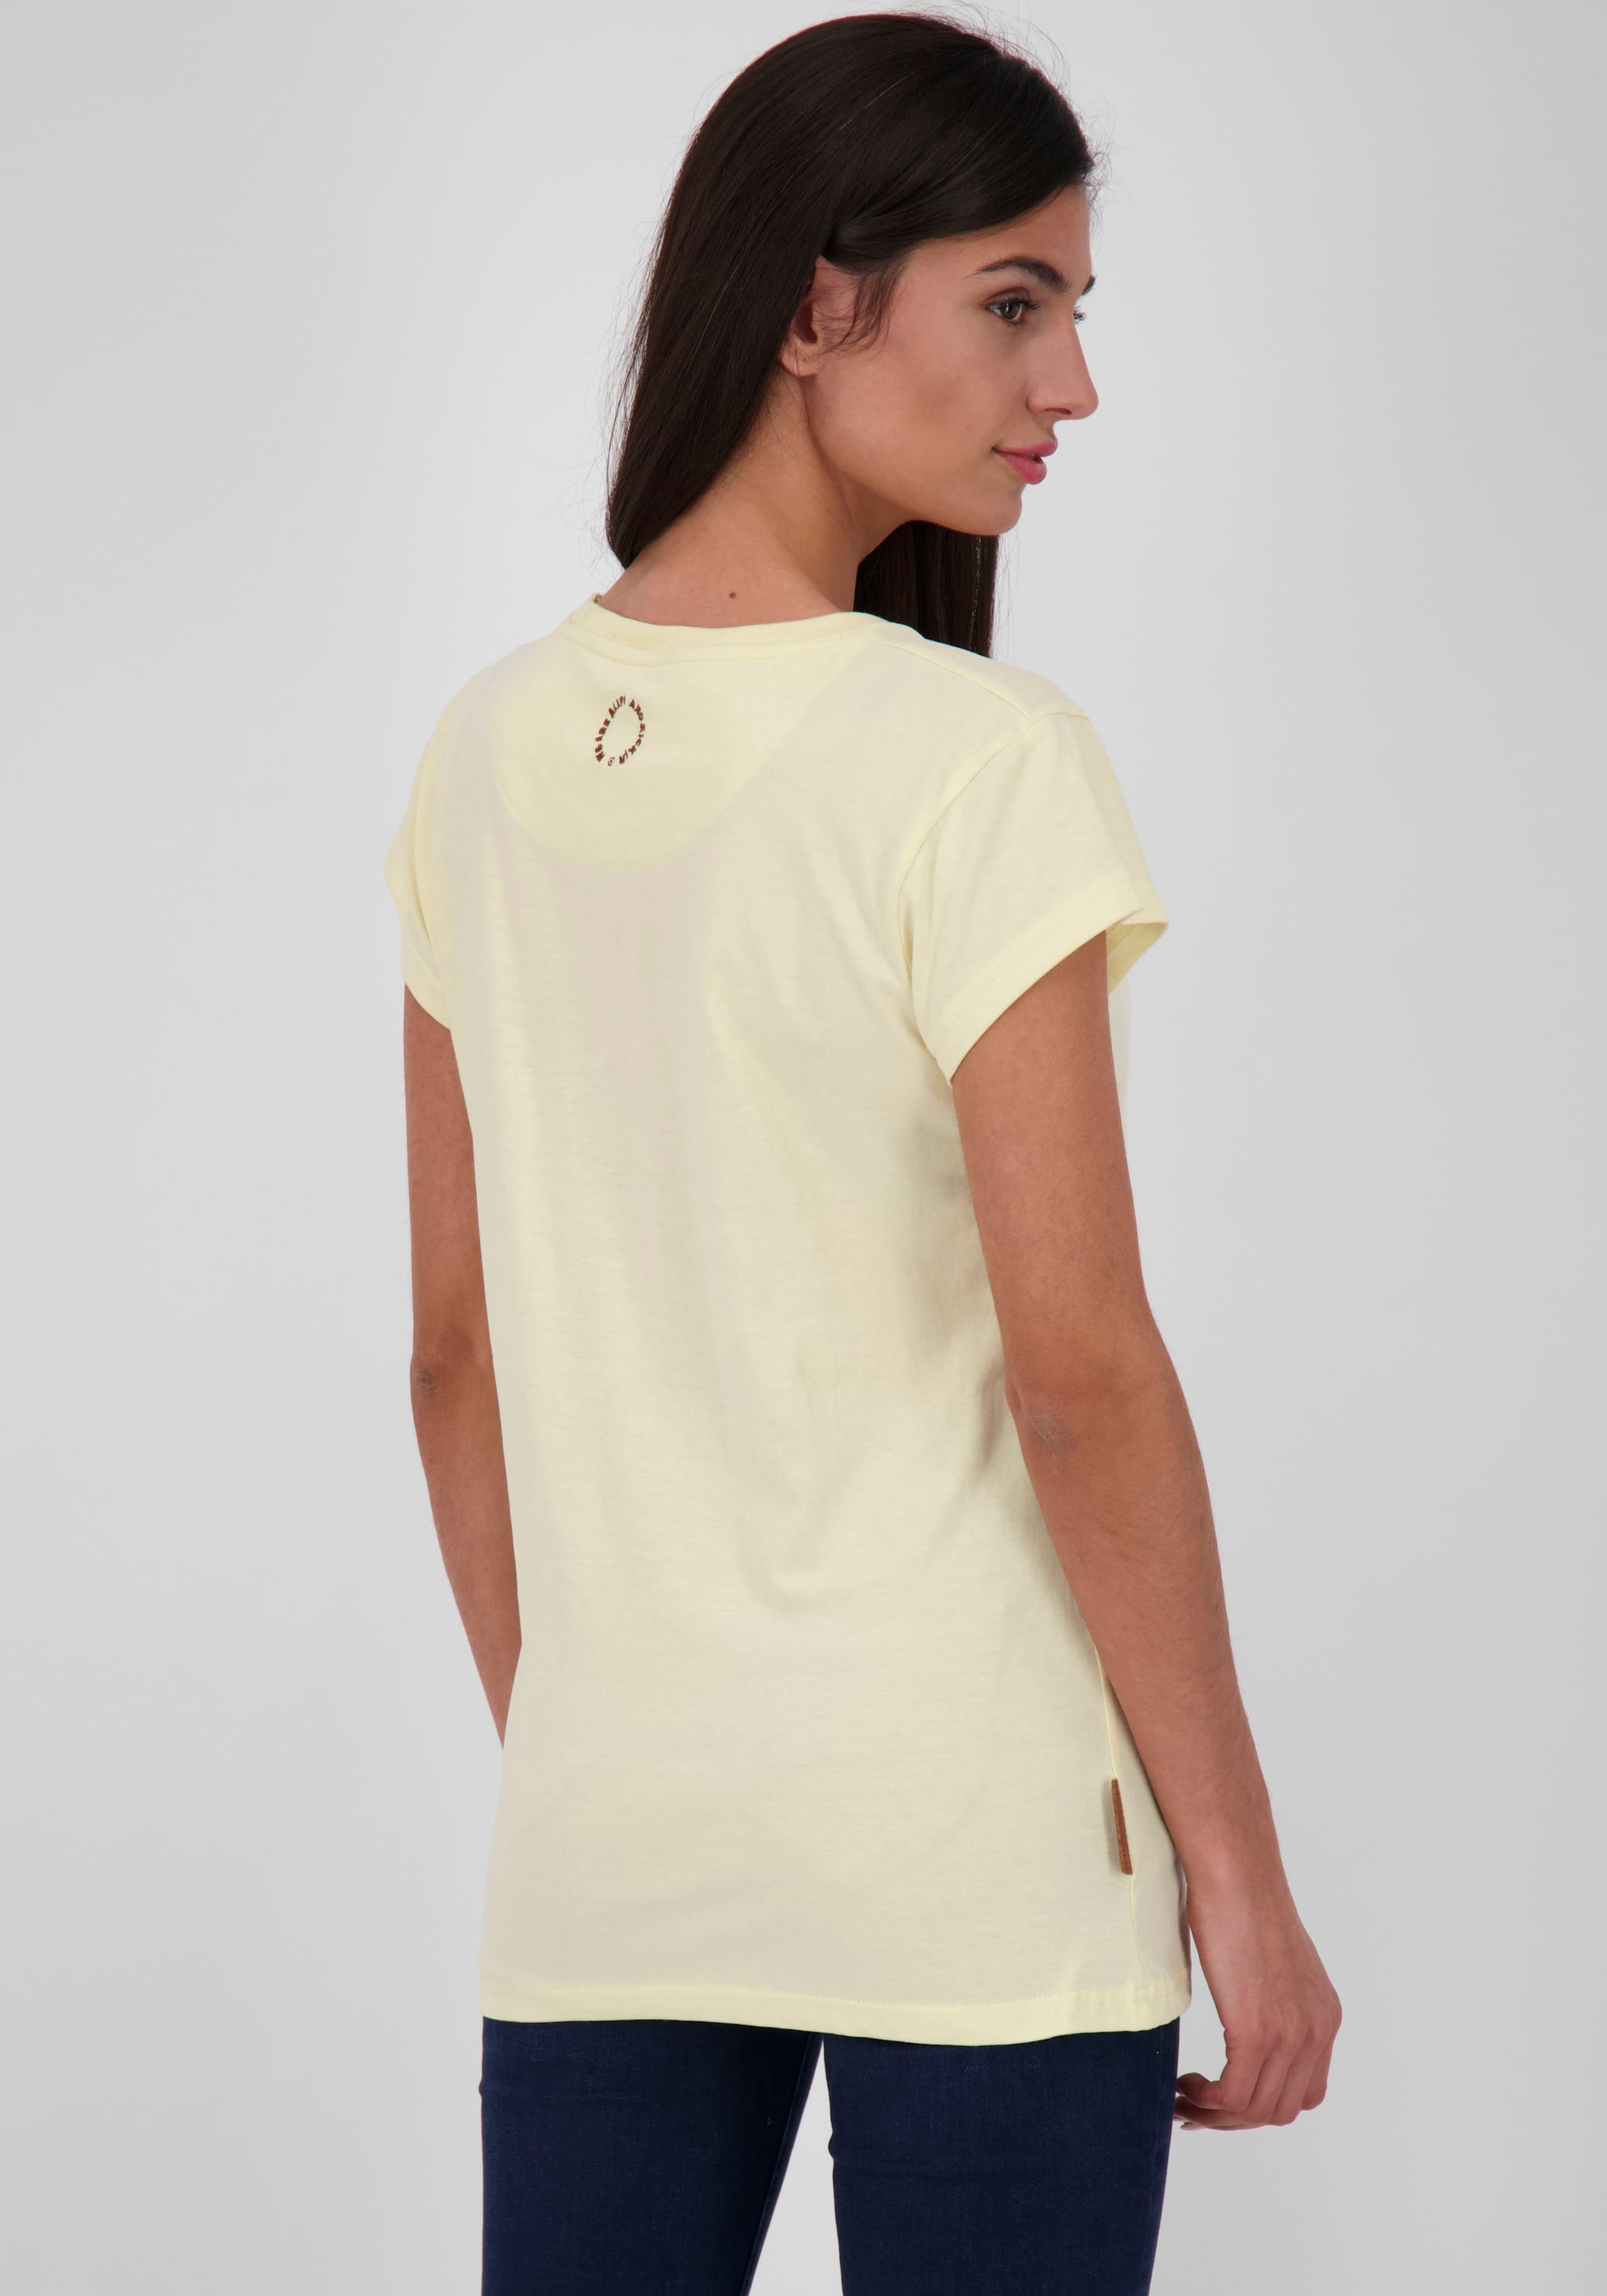 Shop Online T-Shirt A« »MaxiAK Kickin kaufen Alife & OTTO im